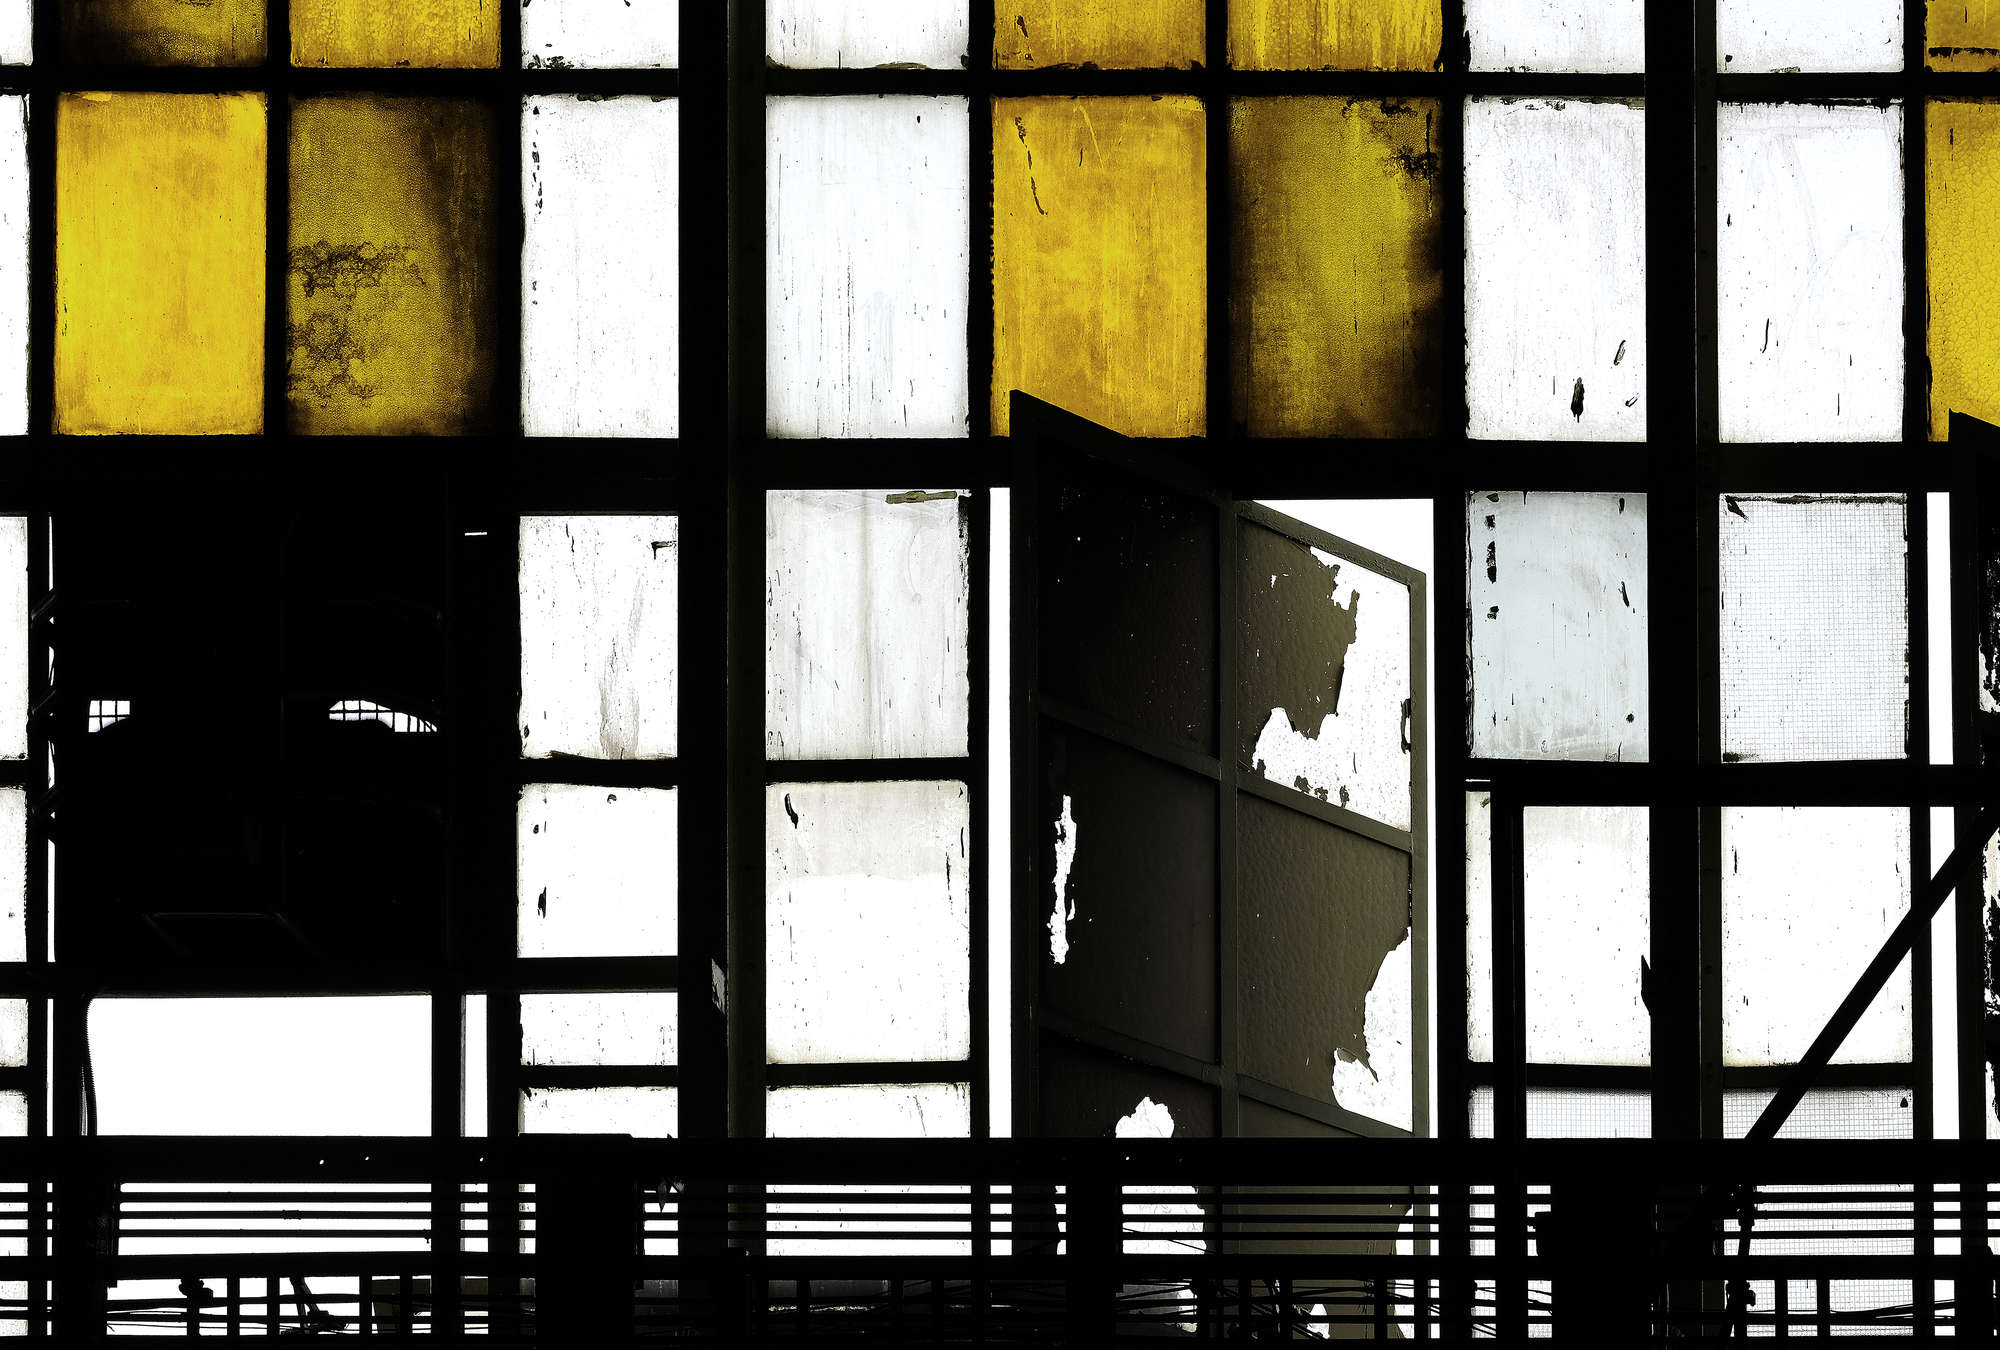             Bronx 1 - Fototapete, Loft mit Buntglas-Fenstern – Gelb, Schwarz | Perlmutt Glattvlies
        